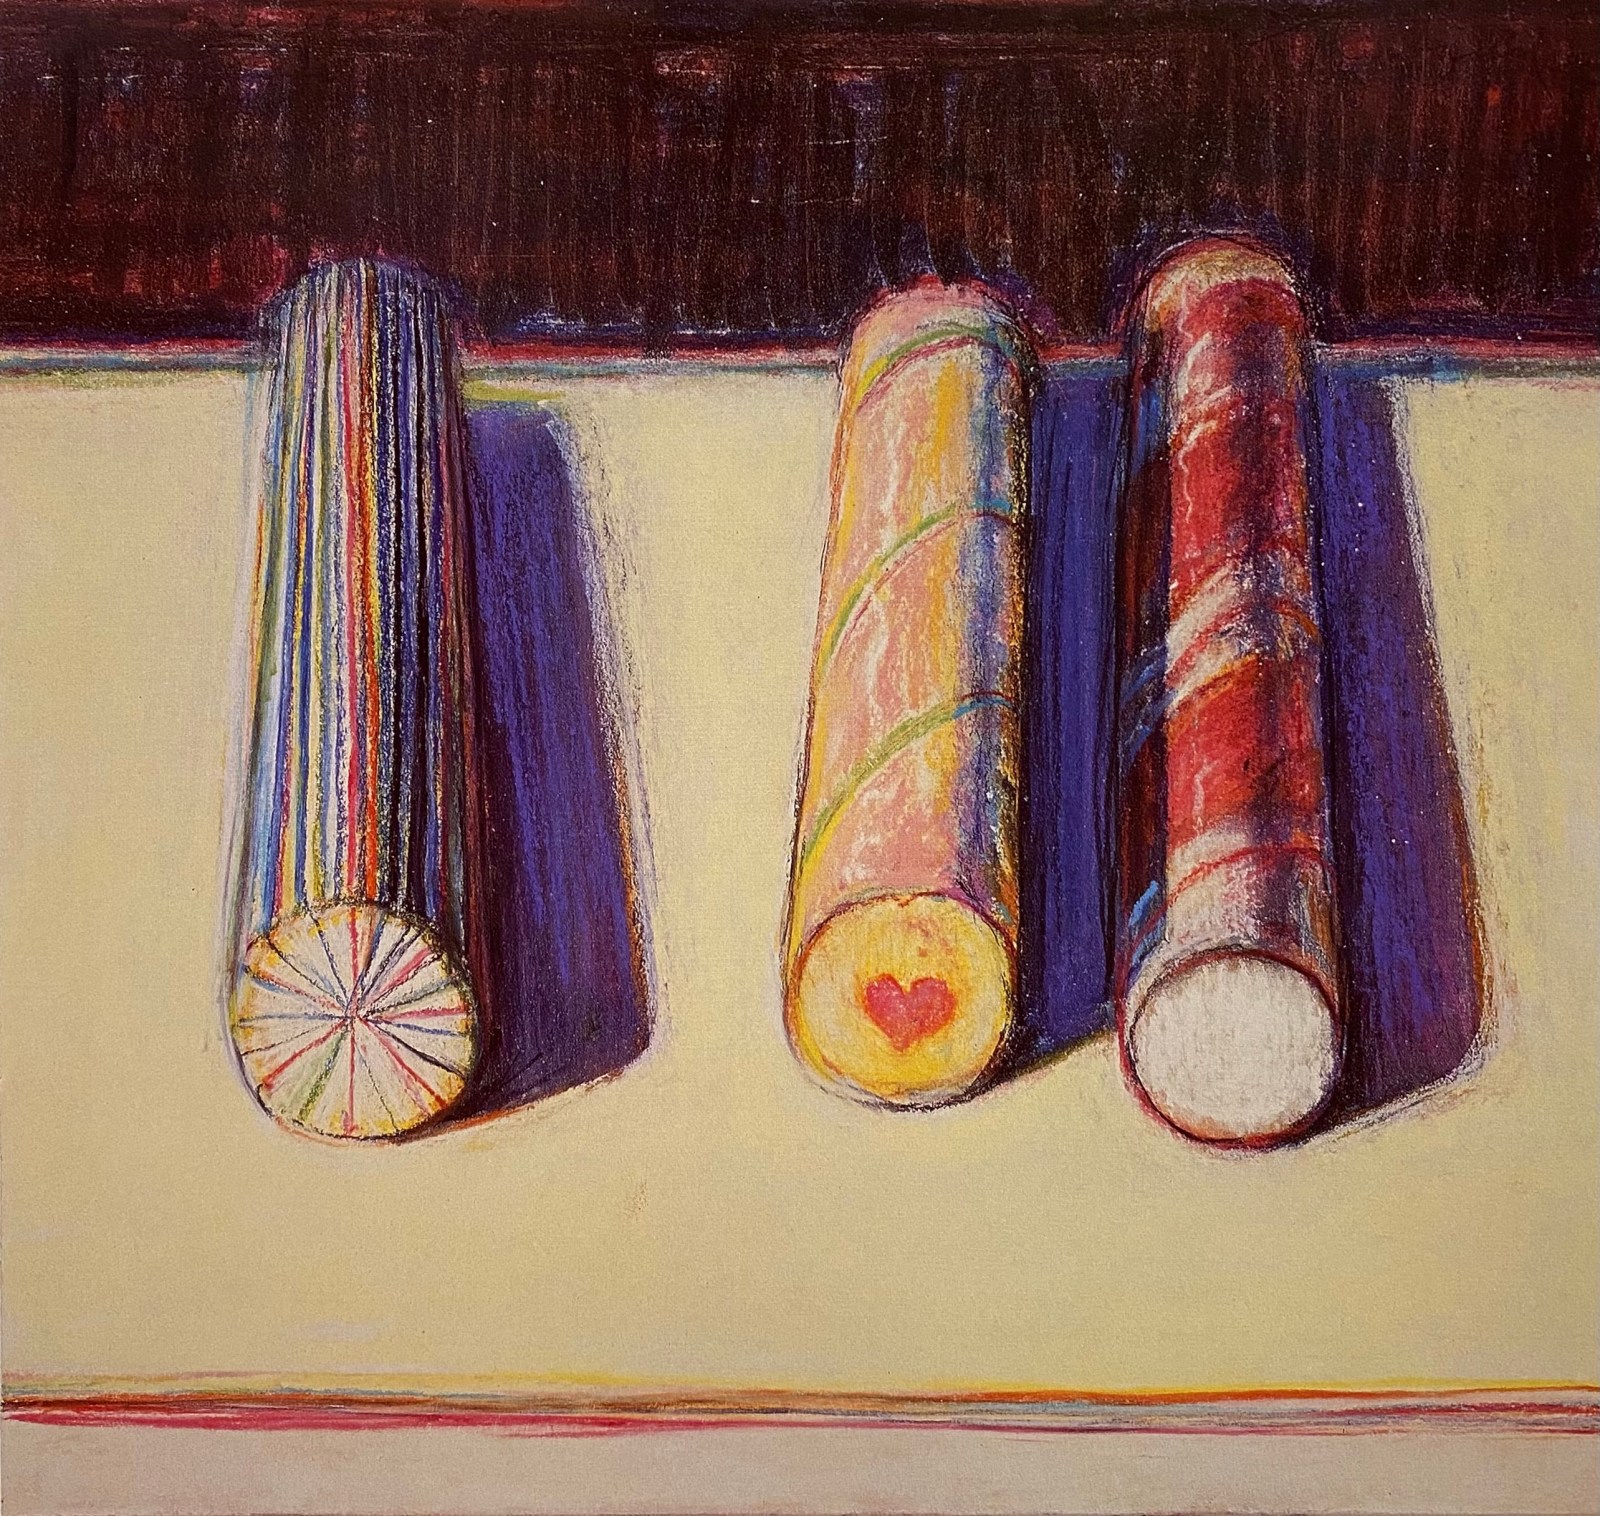 Wayne Thiebaud Pastels 1960-2000 - June 6 - July 29, 2000 - Publications - Paul Thiebaud Gallery